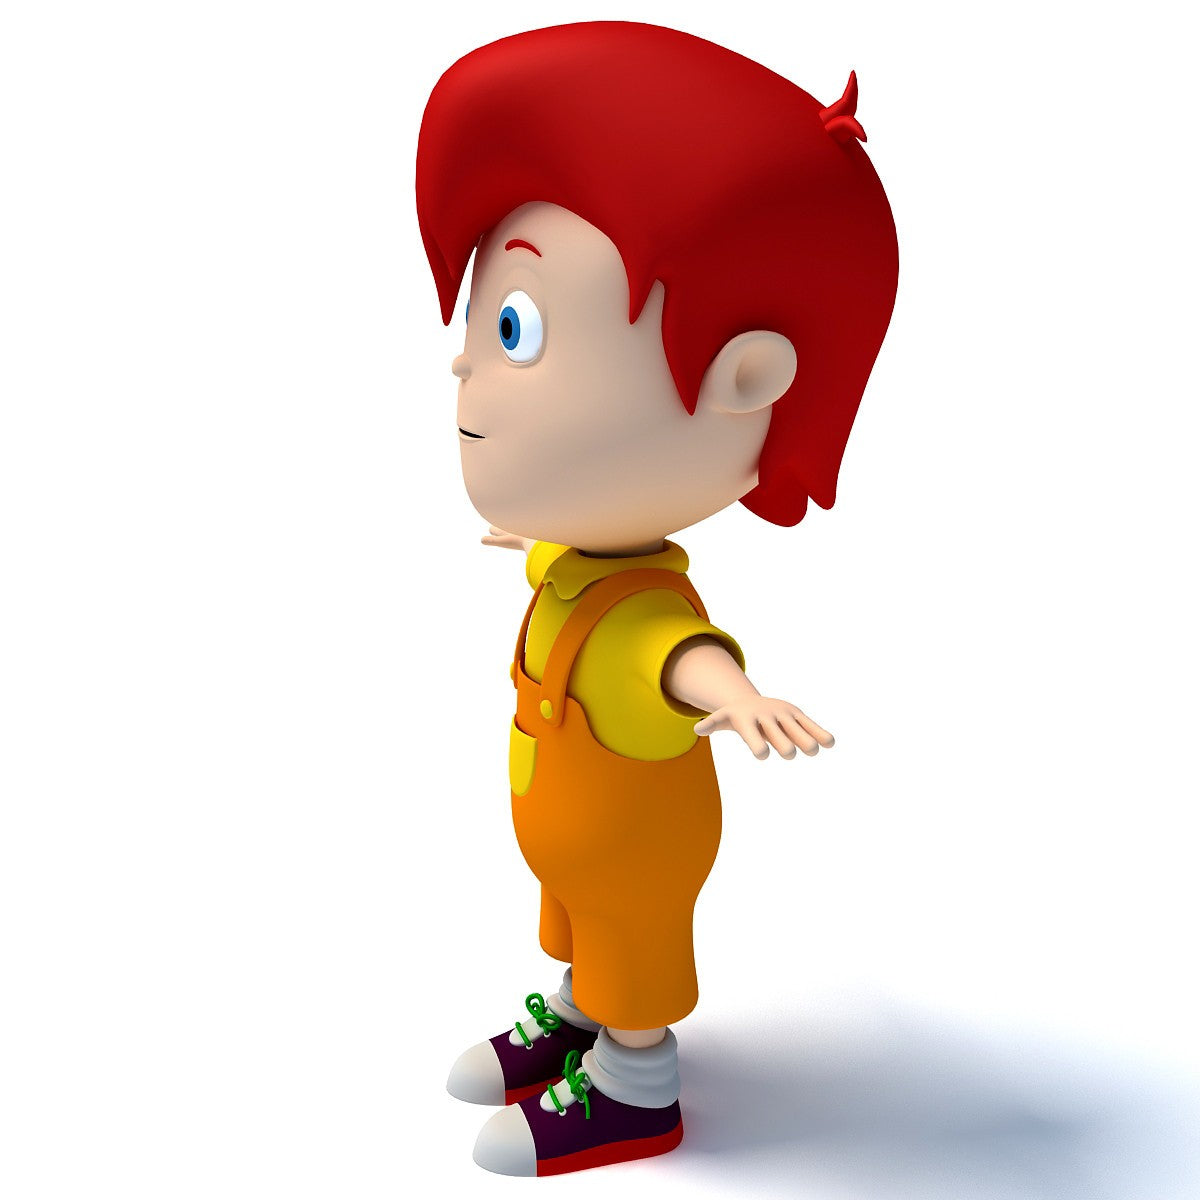 3D Cartoon Characters Models